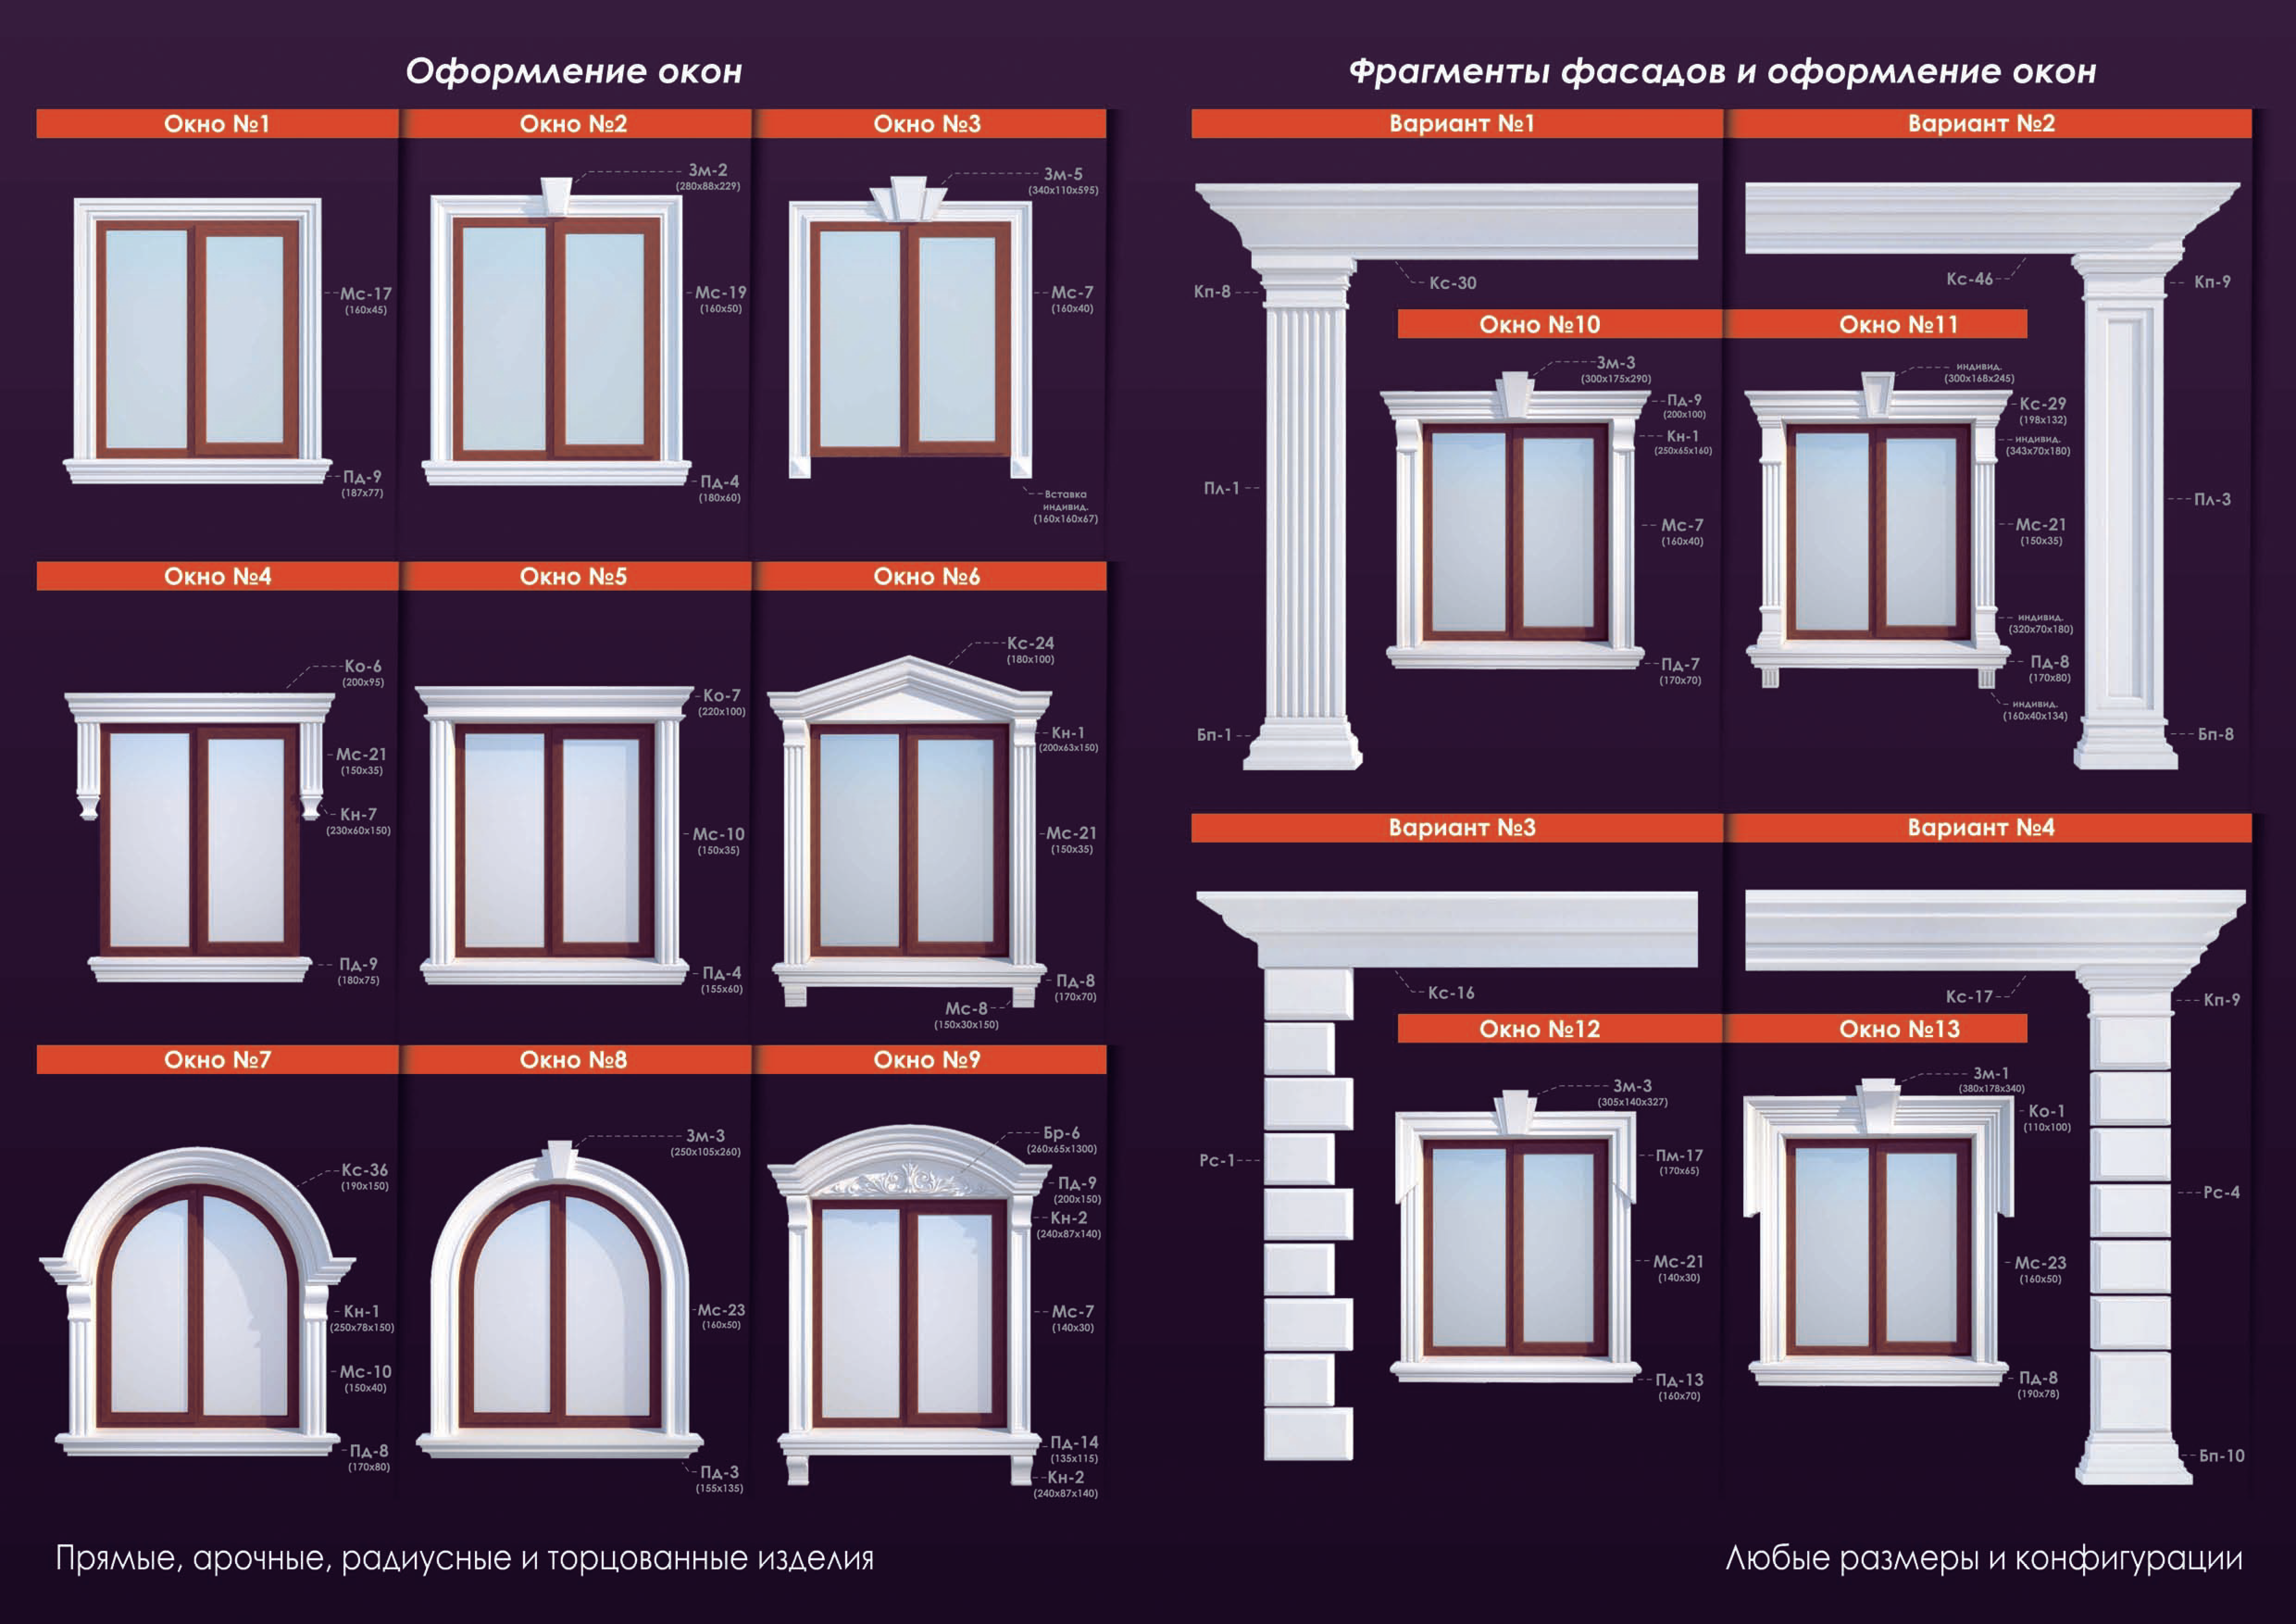 Рекомендации по монтажу элементов фасадного декора из пенополистирола